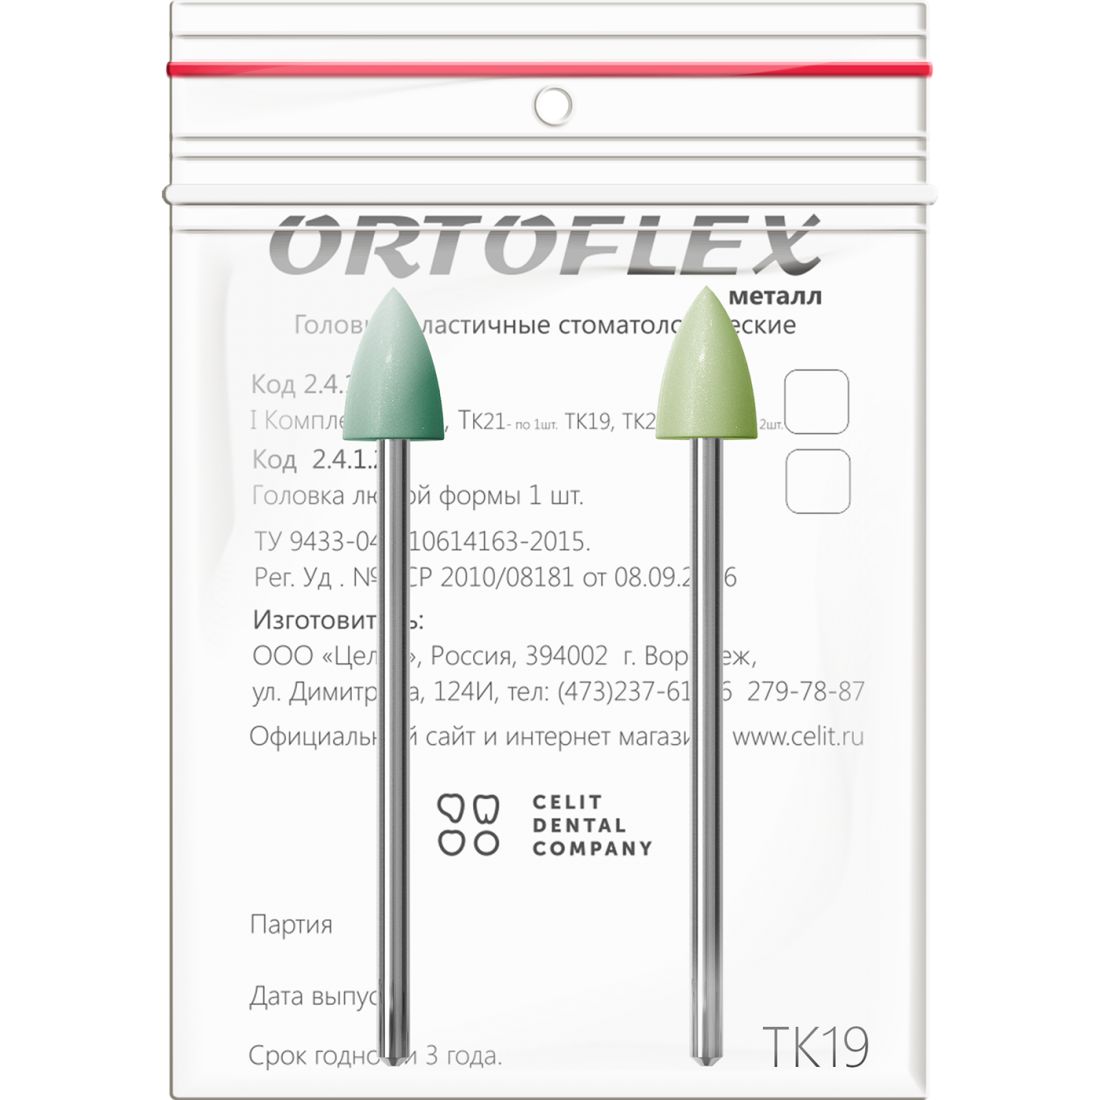 Ortoflex пластмасса ТК19, головки Ортофлекс для обработки пластмассы (2шт)